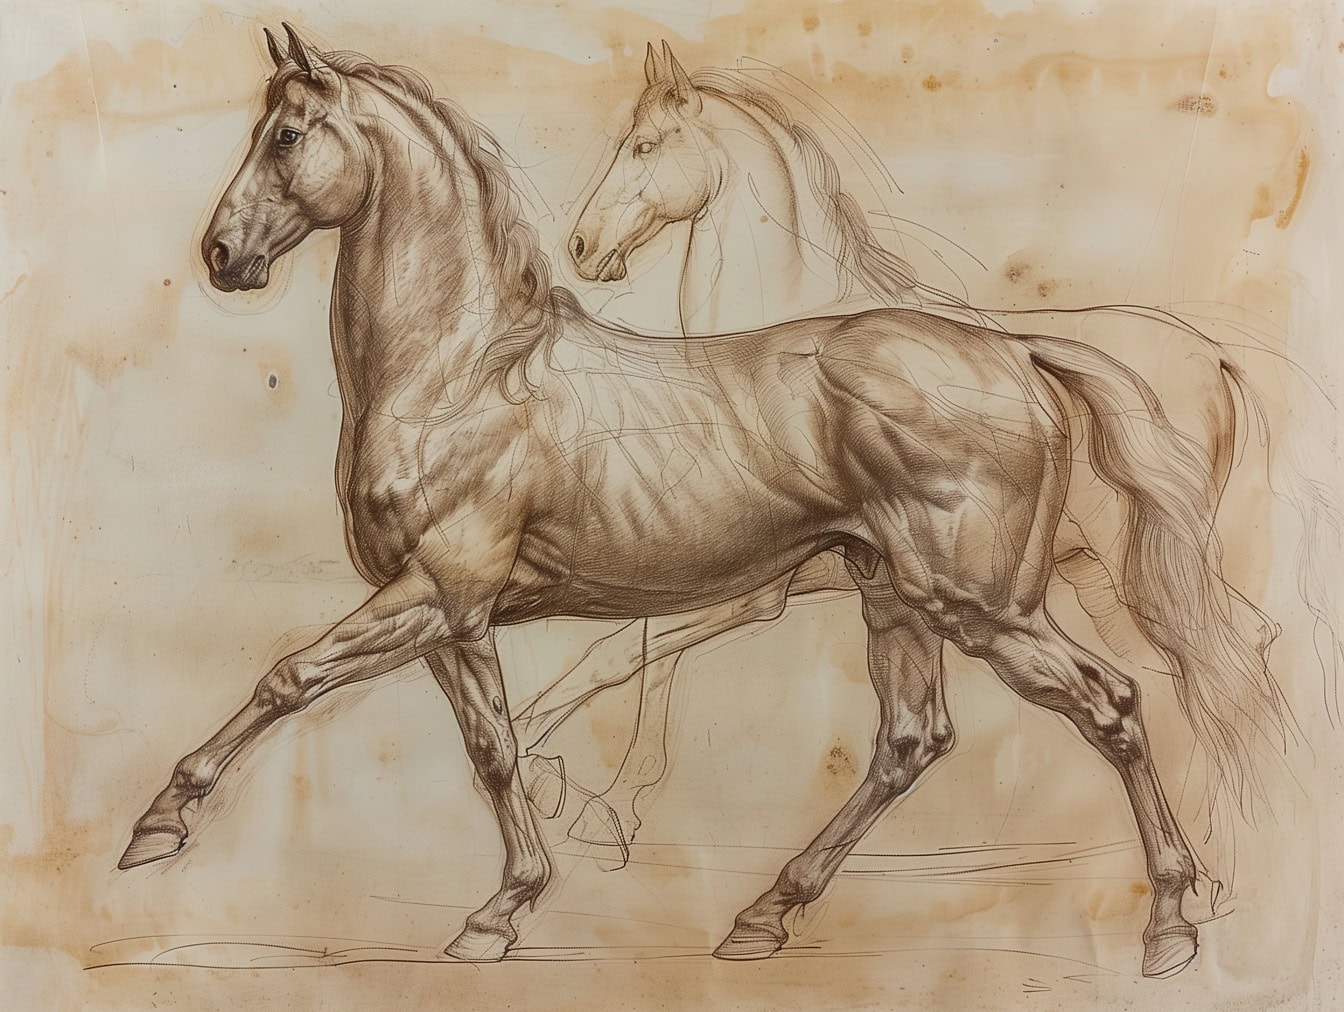 Kresba dvou koní na starém papíře, hřebec vpředu je hotový, zatímco kůň v pozadí je ještě pracovní skica